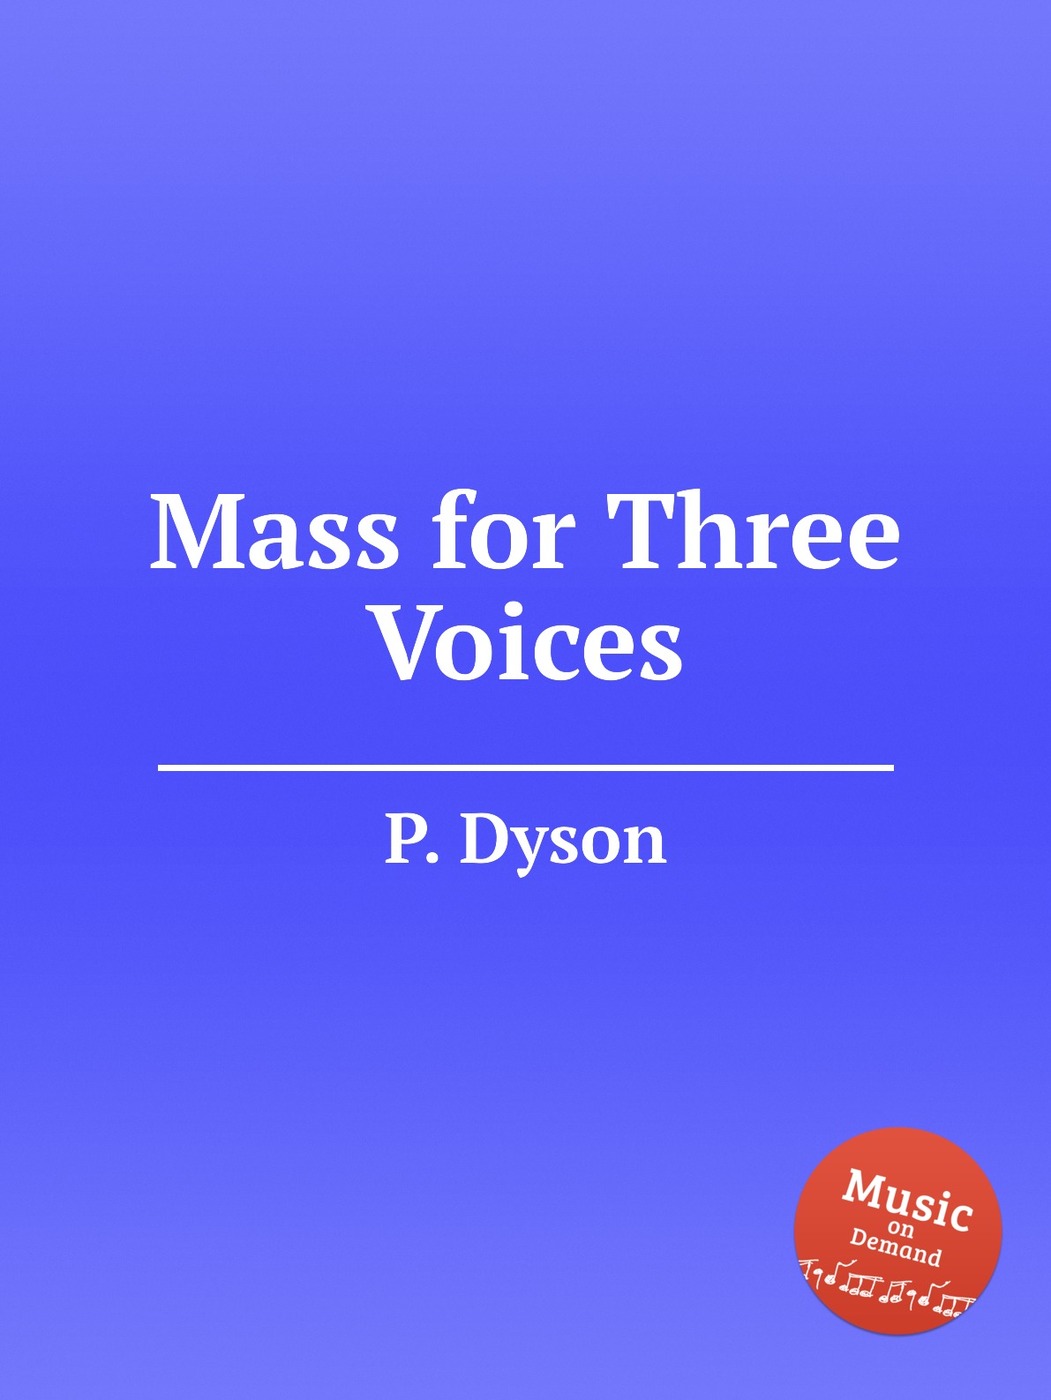 W3 voices. Voice book.